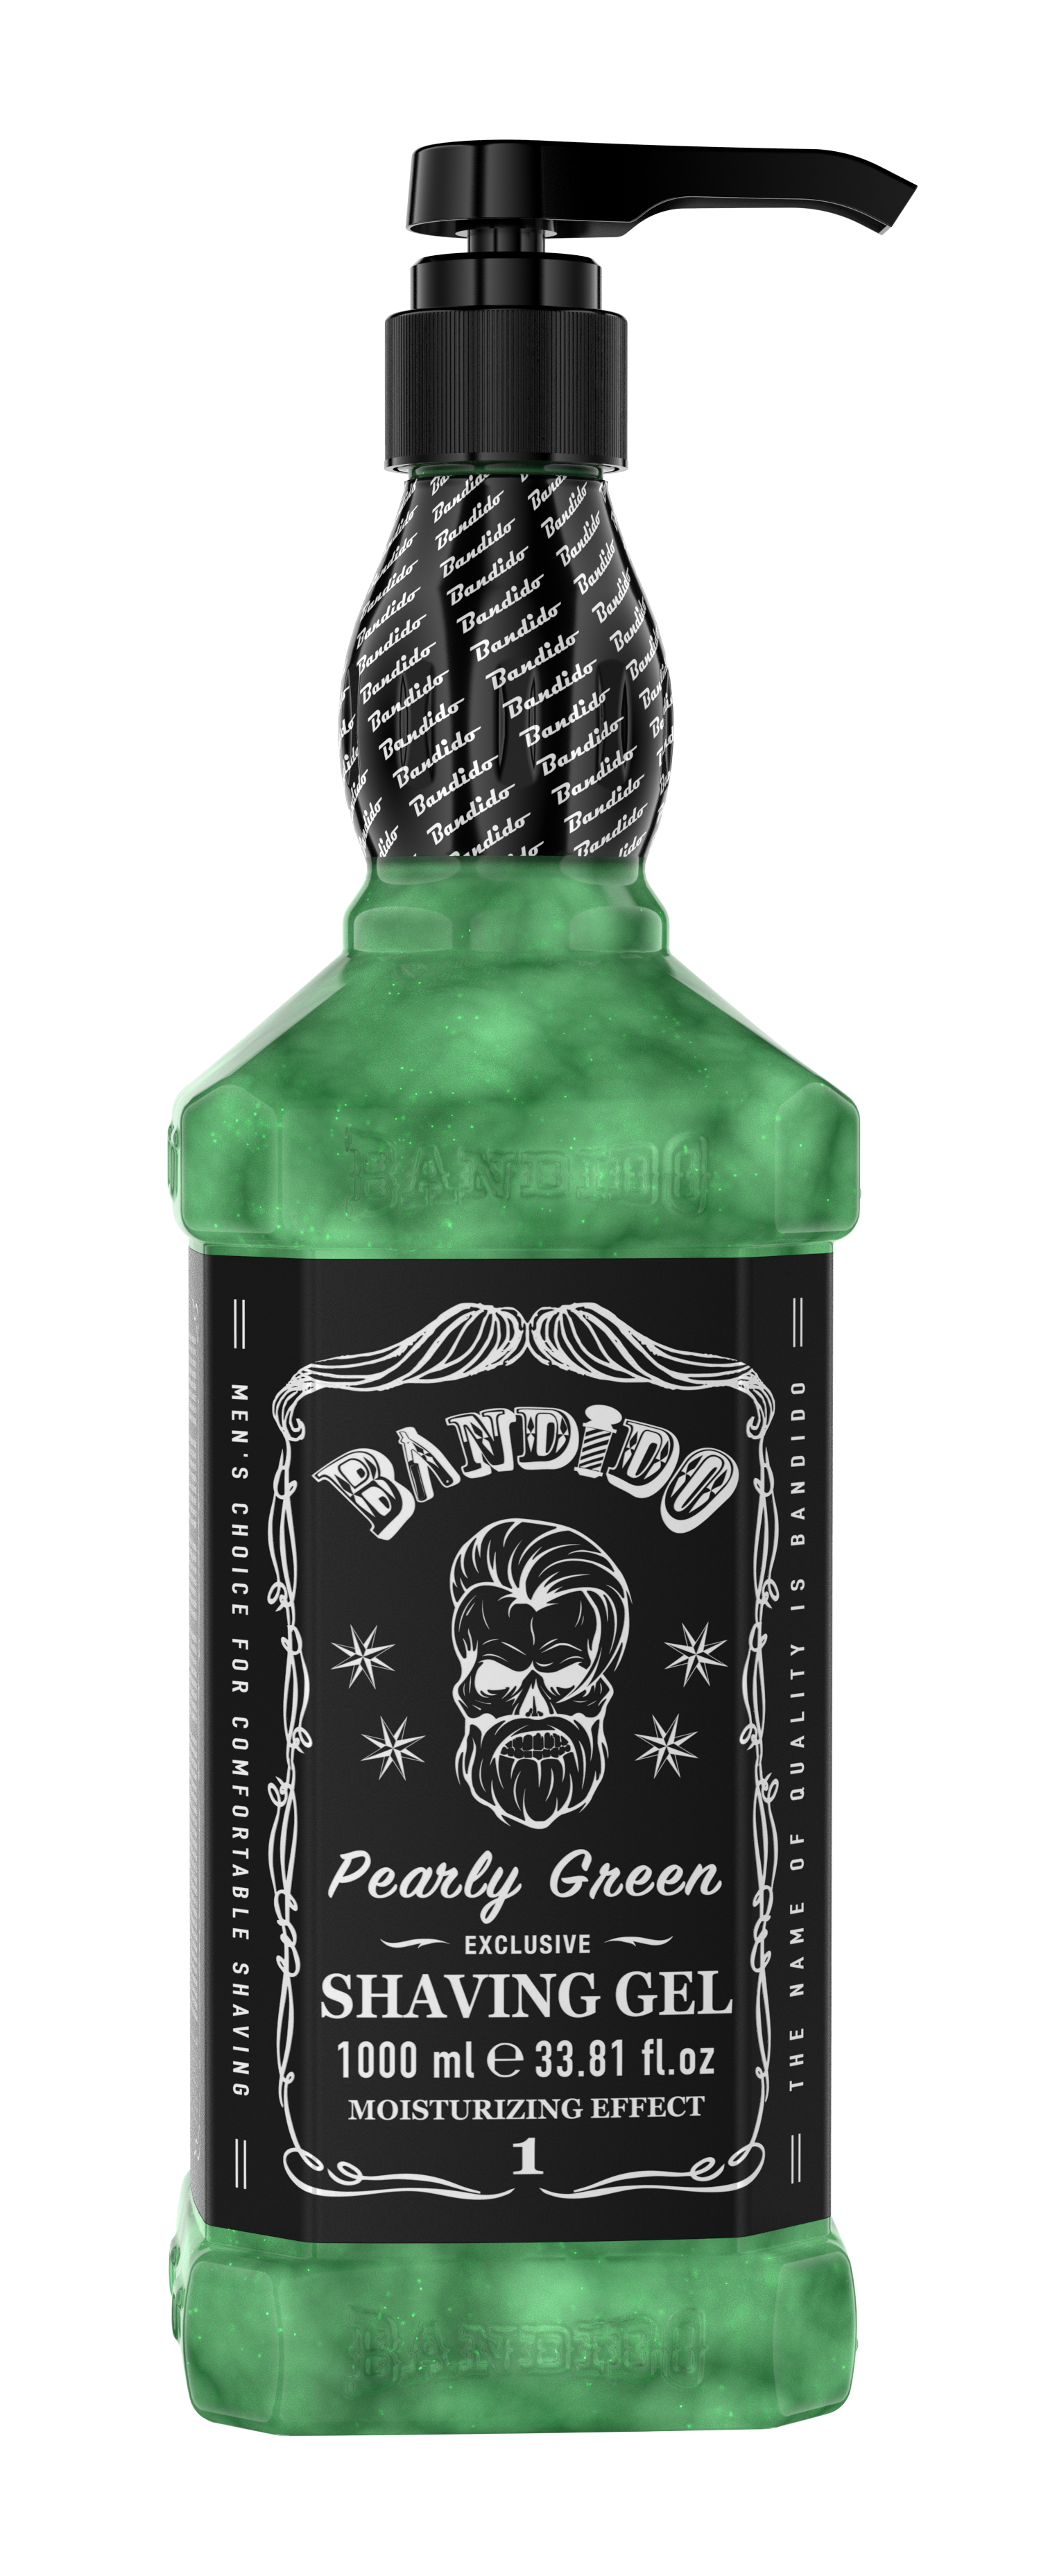 Bandido Pearly Green Shaving Gel 1000ml/33.81fl oz